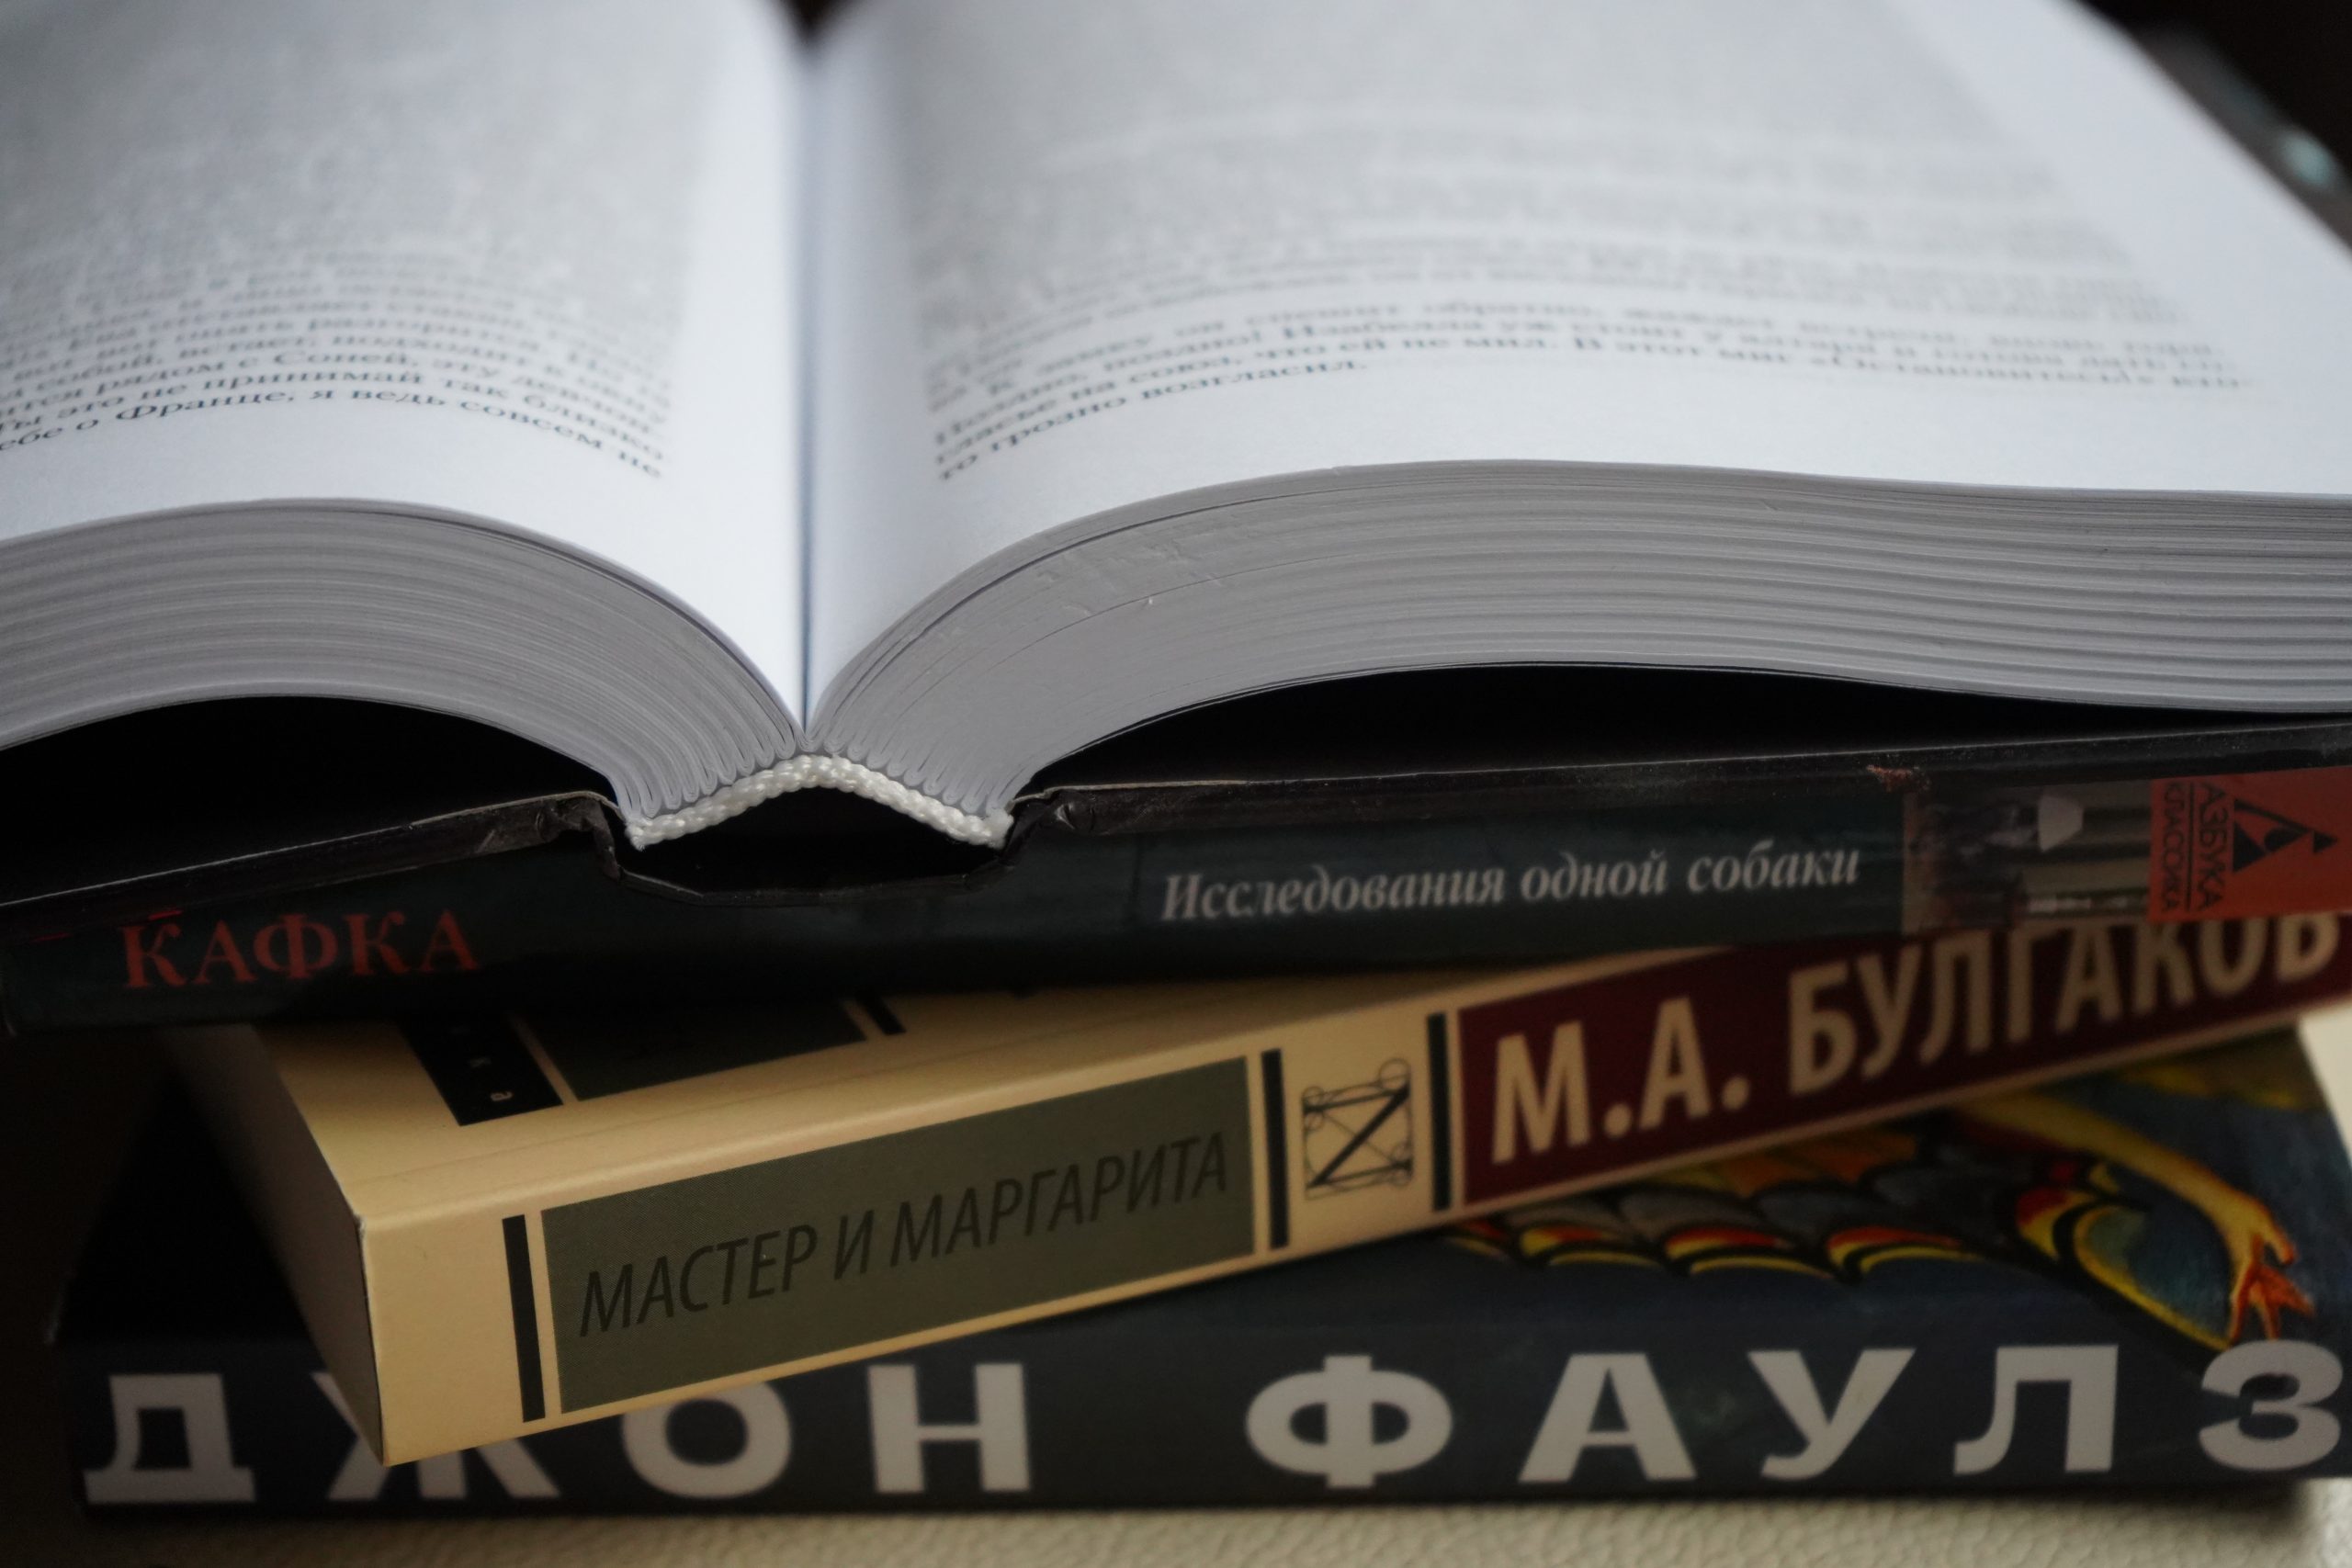 Акция по сбору книг состоится в библиотеке №136 имени Льва Толстого. Фото: Анна Быкова, «Вечерняя Москва»